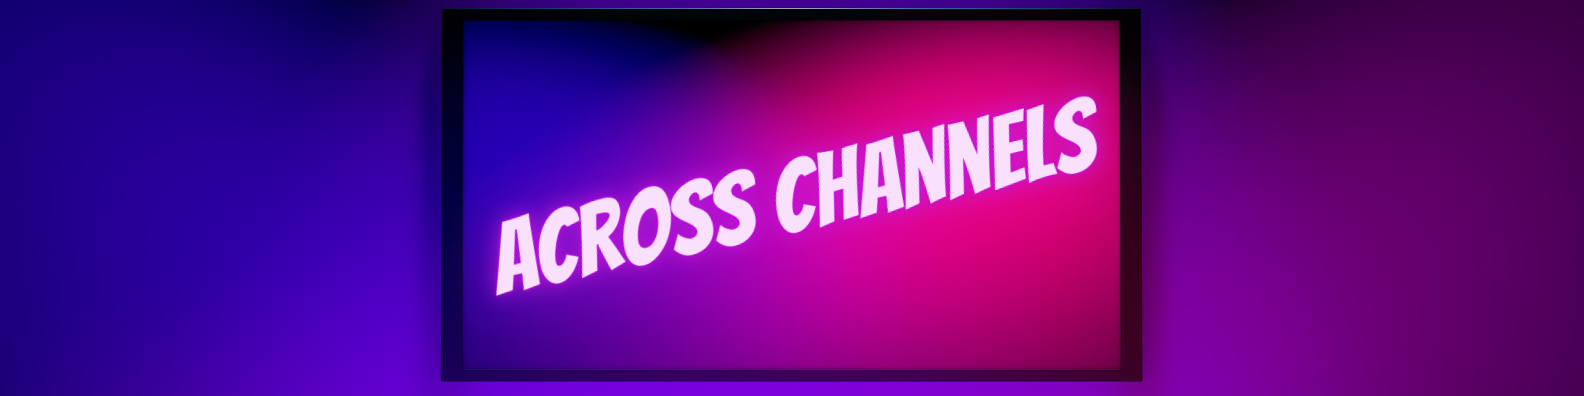 cross channel marketing